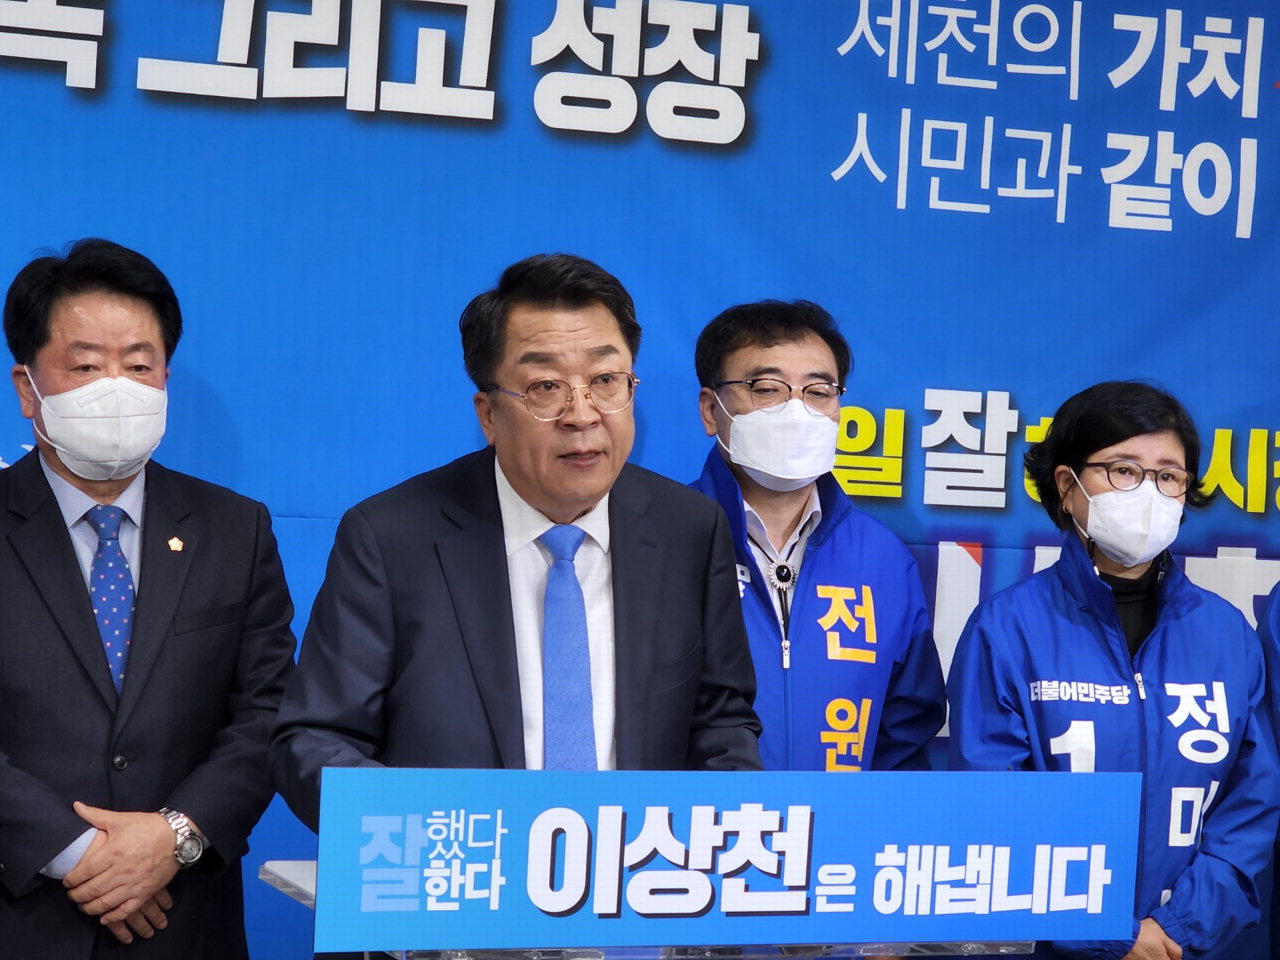 이상천 제천시장이 13일 재선 기자회견을 갖고 있는 모습